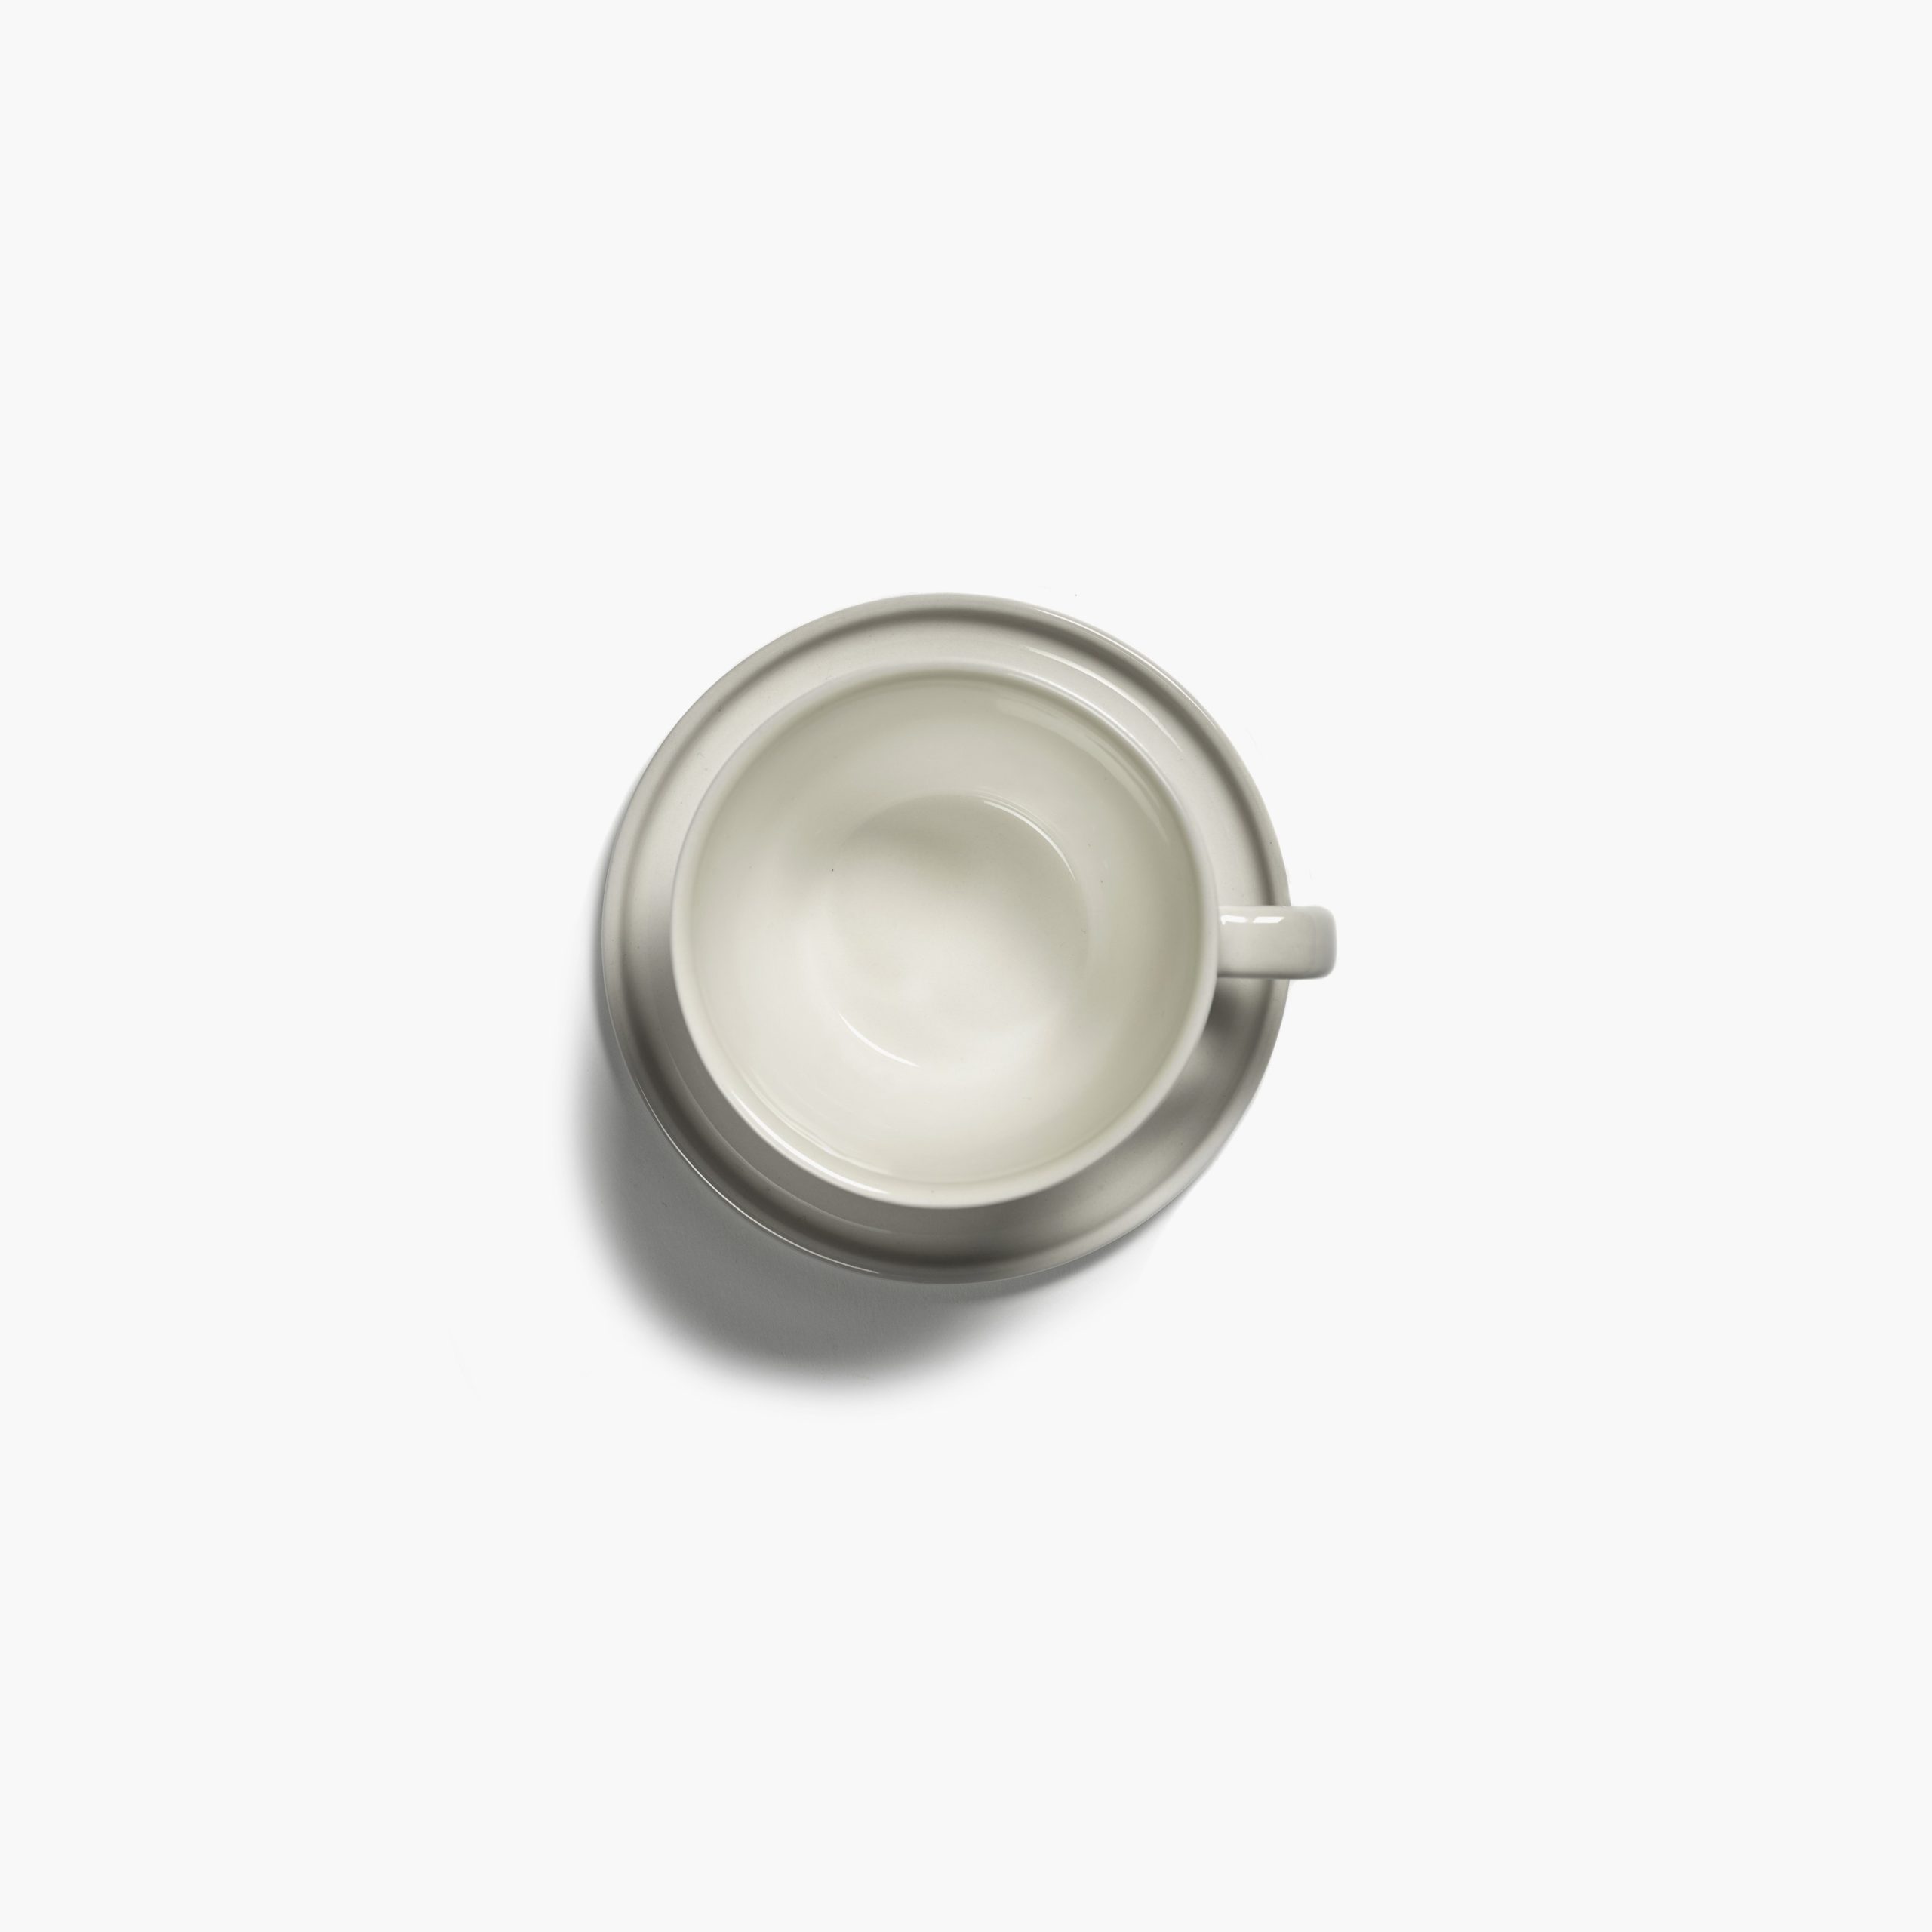 platillo y taza para cappuccino, de porcelana, en color marfil CENA diseñados por Vincent Van Duysen. Vista cenital.